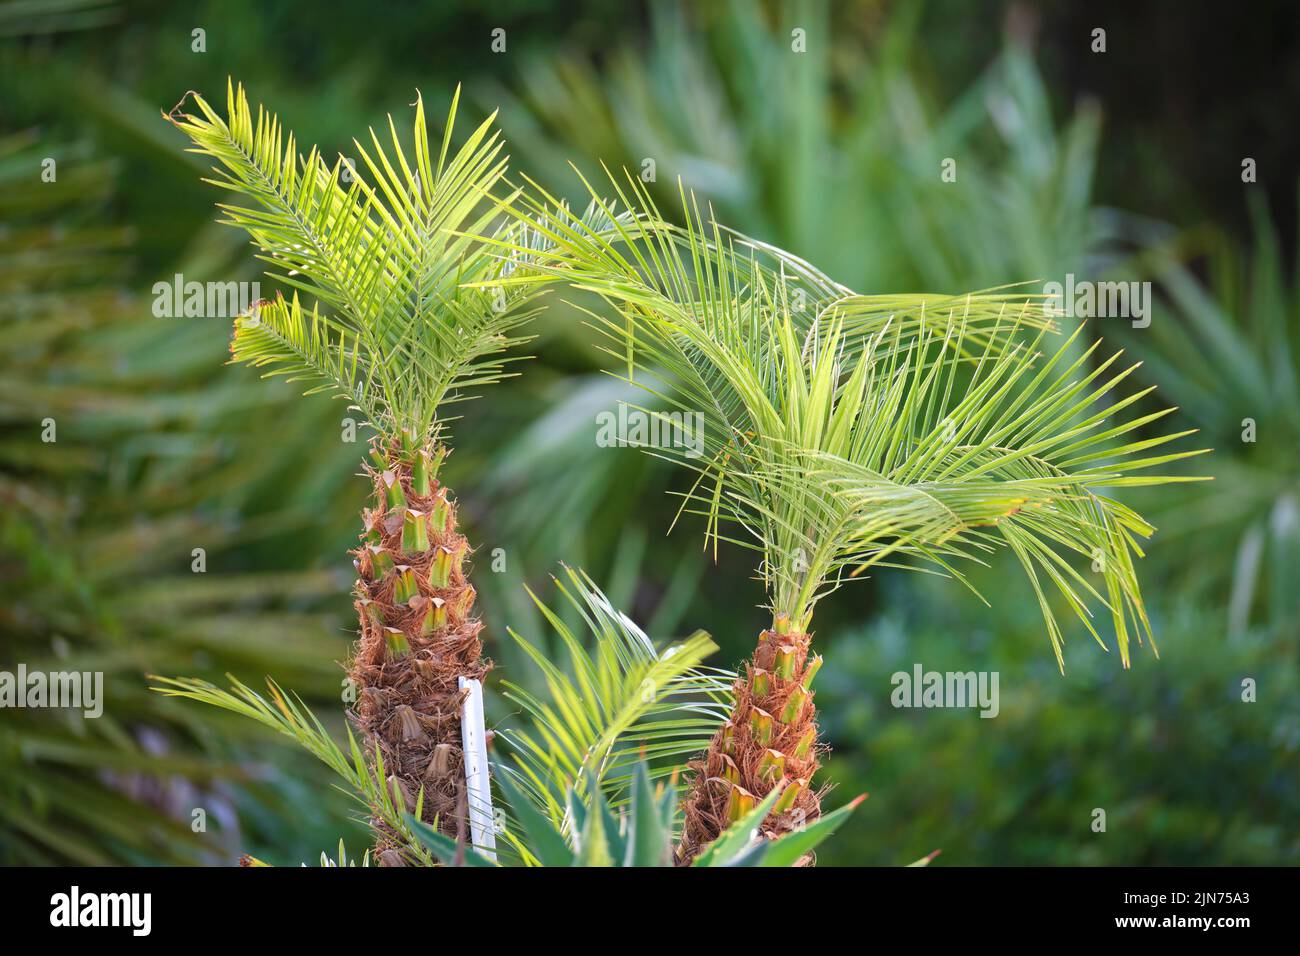 Jeunes palmiers à noix de coco frais avec des feuilles de vert vif qui groving dans des conditions naturelles à l'extérieur Banque D'Images